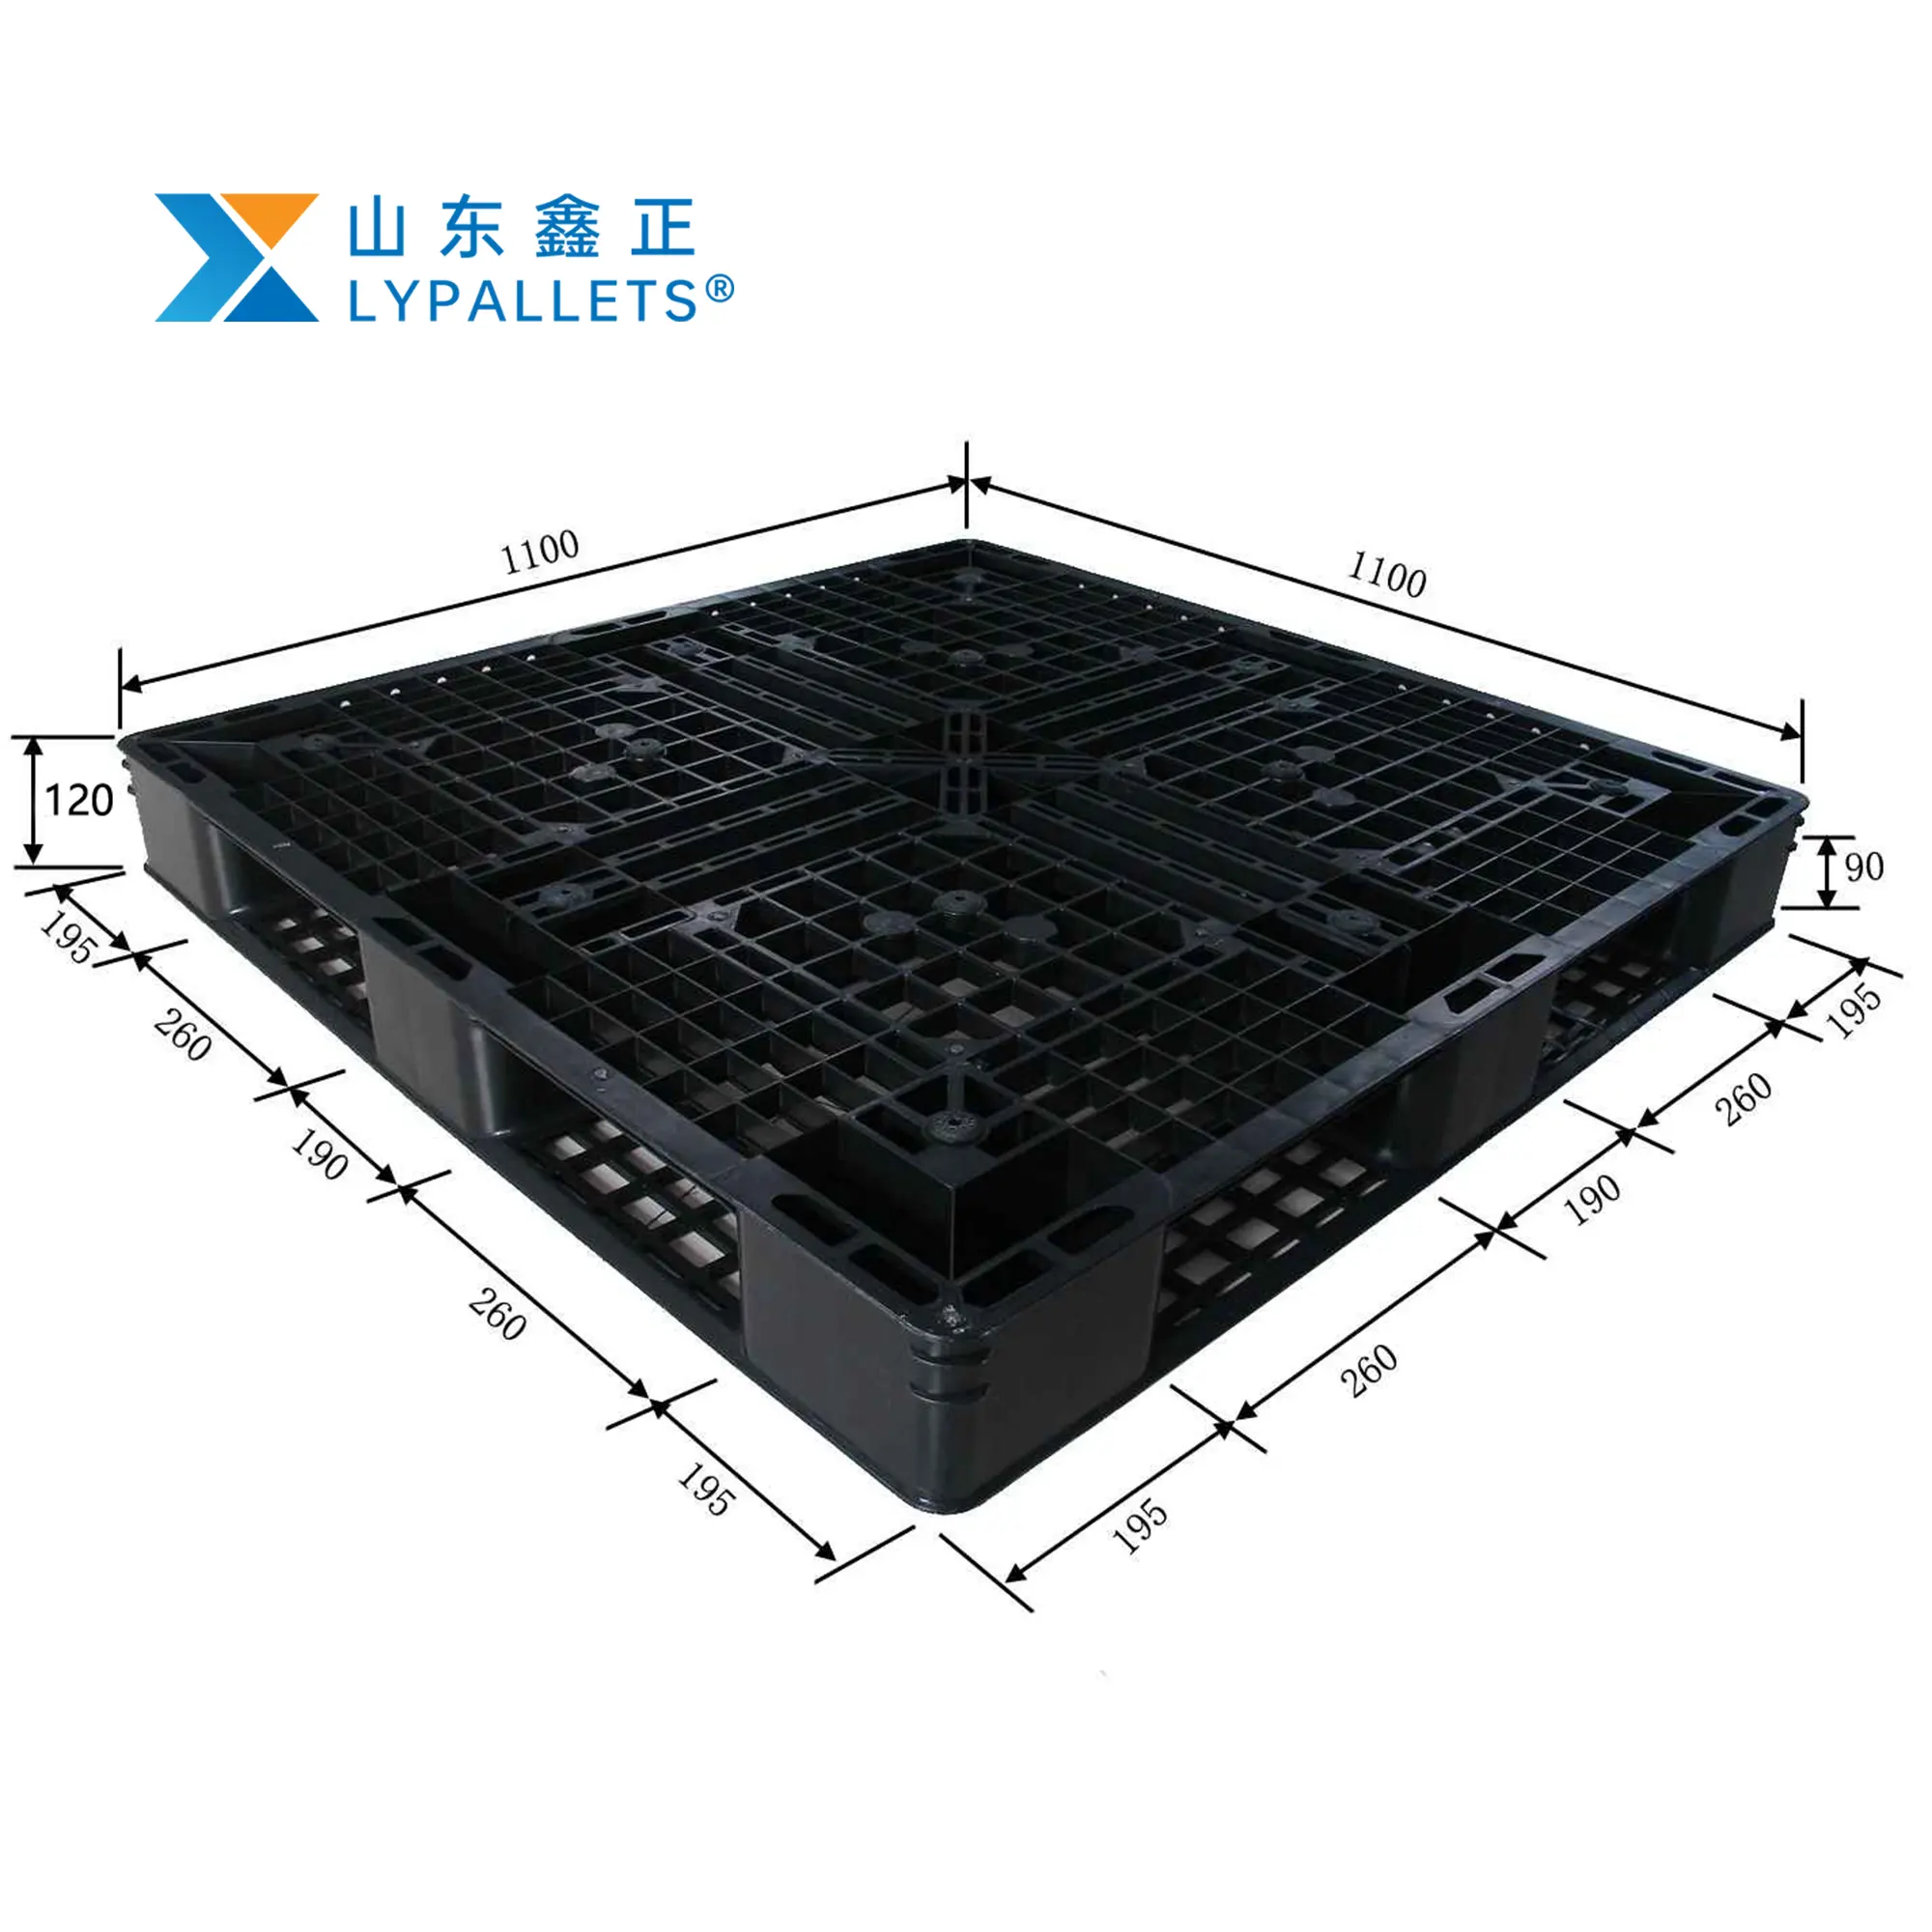 Venta al por mayor Lypallets 1100x1100 palet de plástico negro HDPE apilable industrial unidireccional exportación palet de plástico con el mejor precio